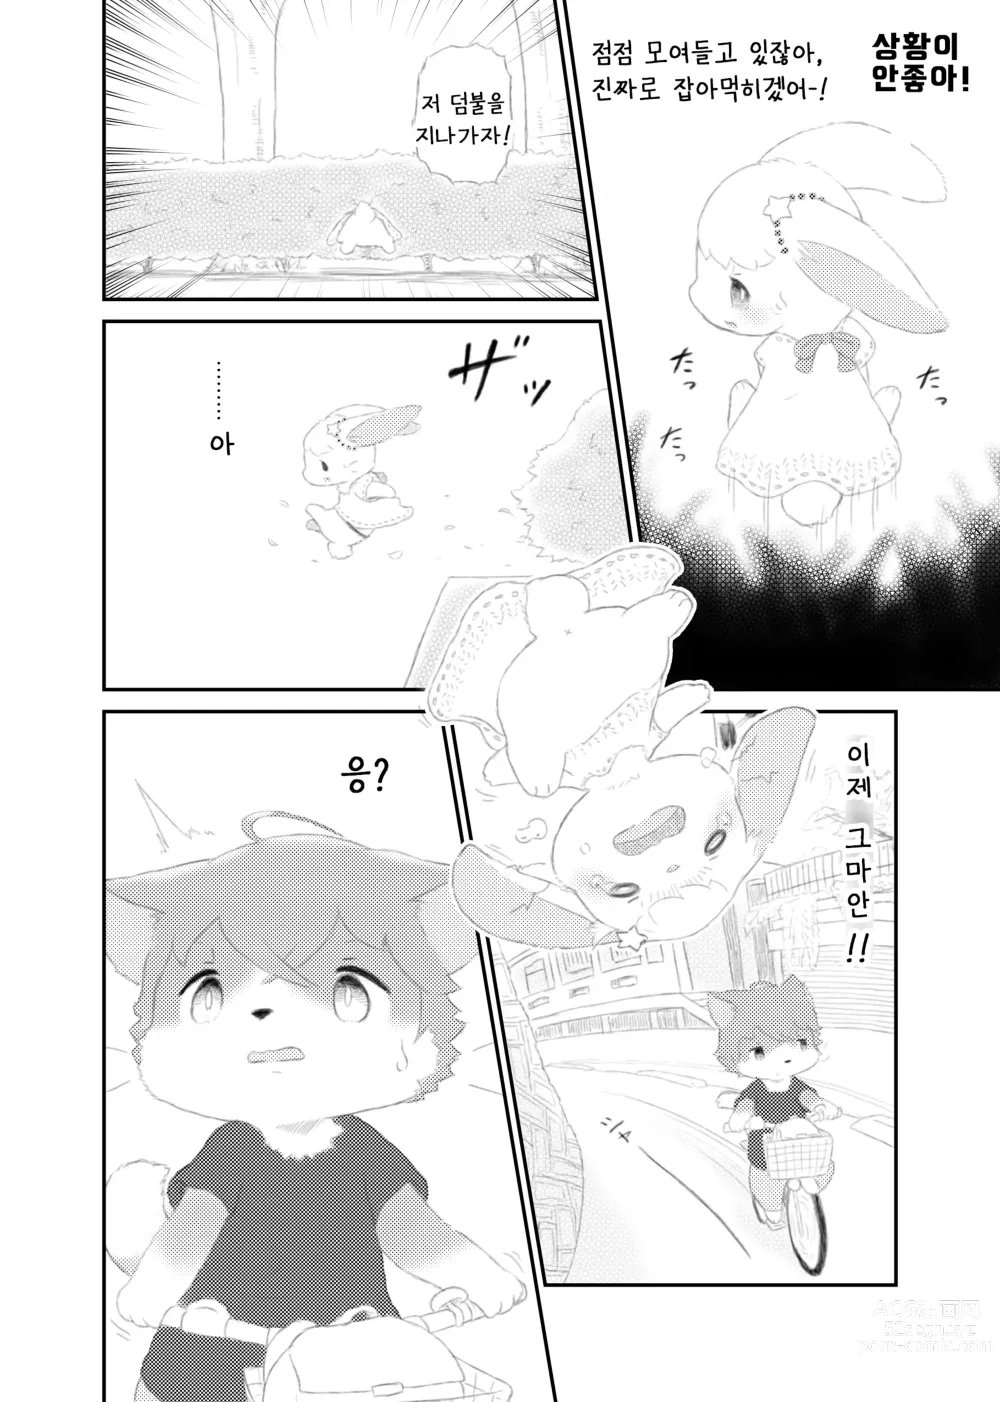 Page 6 of doujinshi 달토끼통신 1화